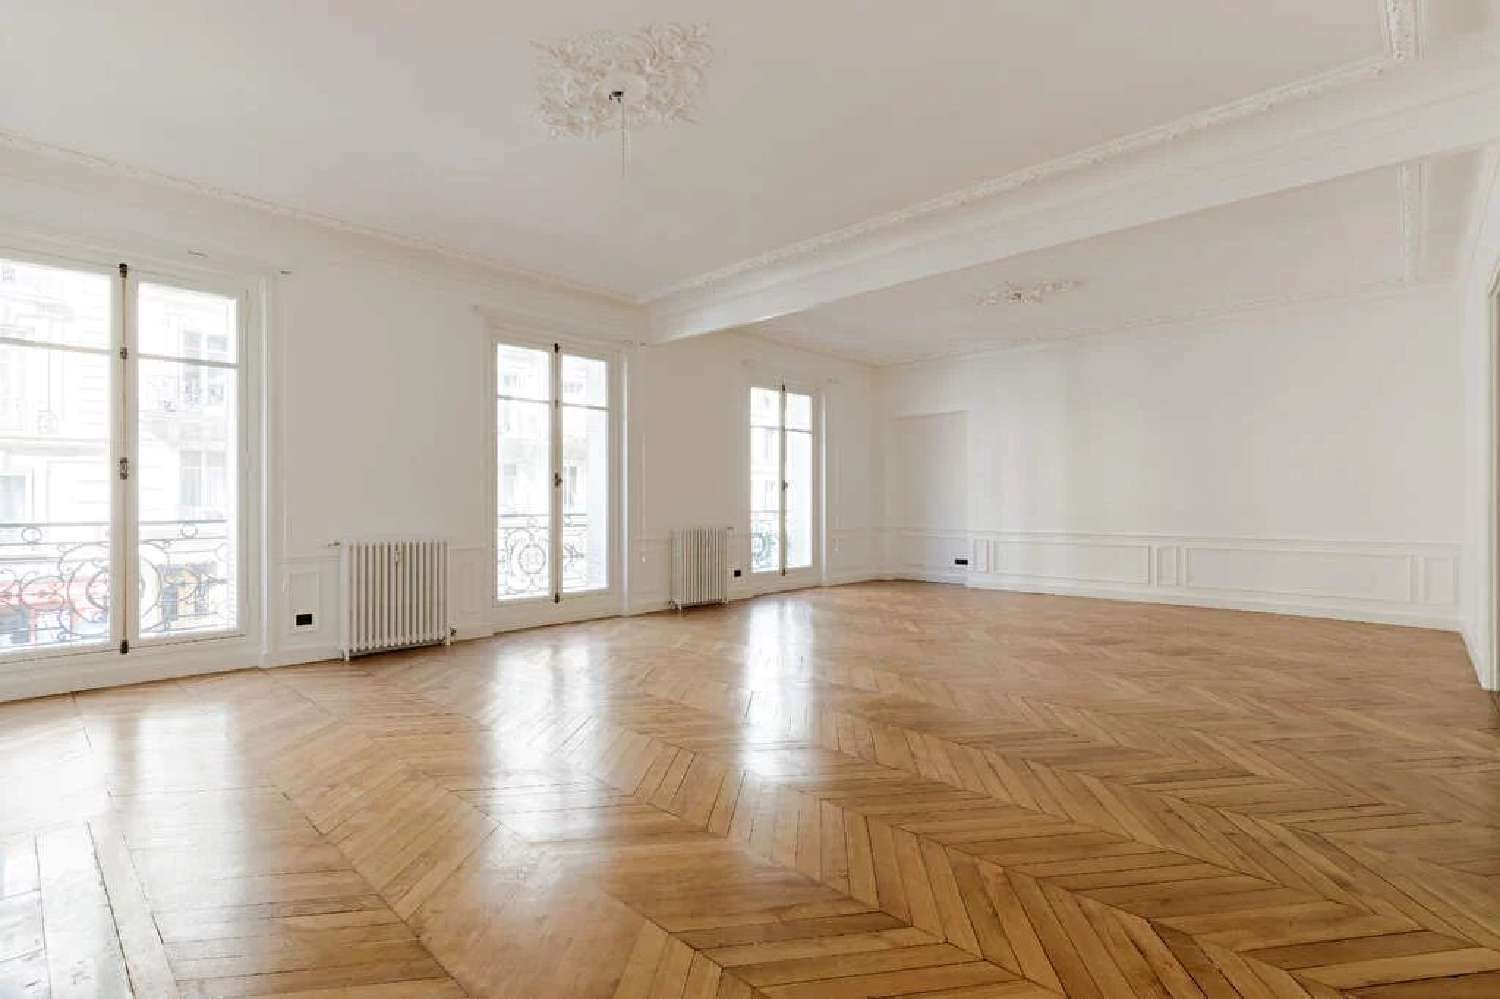  à vendre appartement Clichy Hauts-de-Seine 4